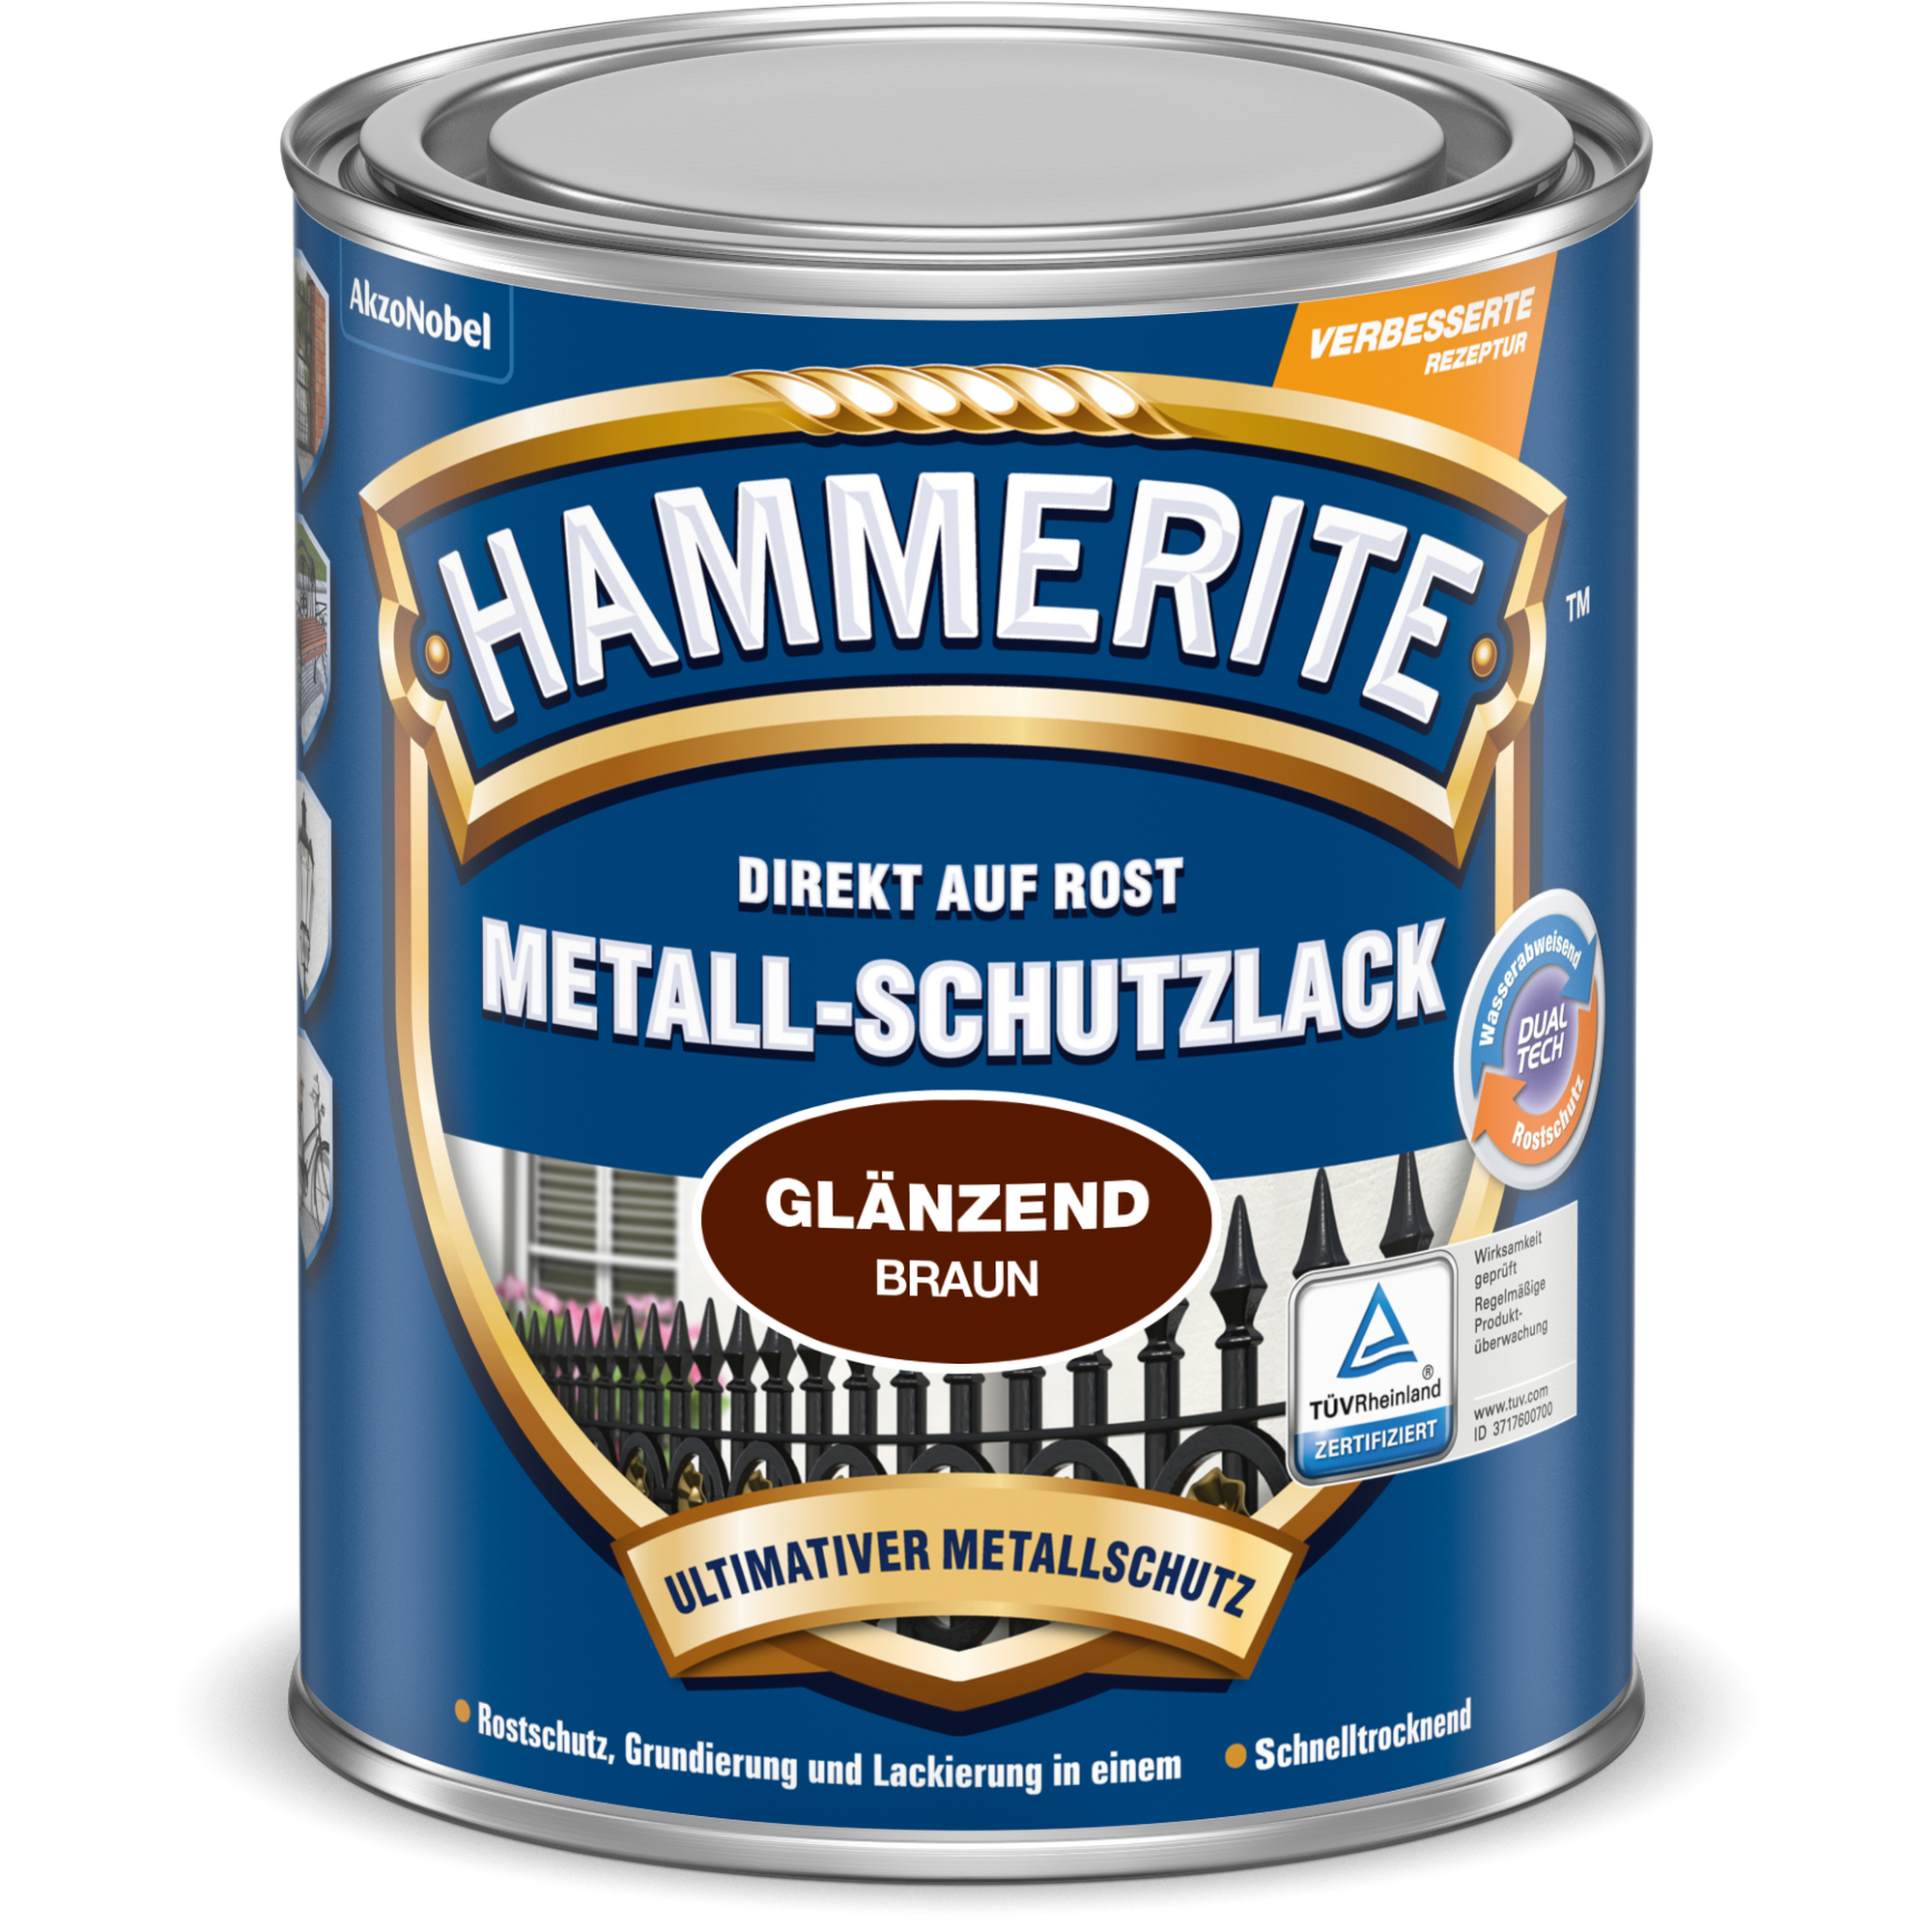 Metallschutzlack 'Direkt auf Rost' braun glänzend 250 ml + product picture